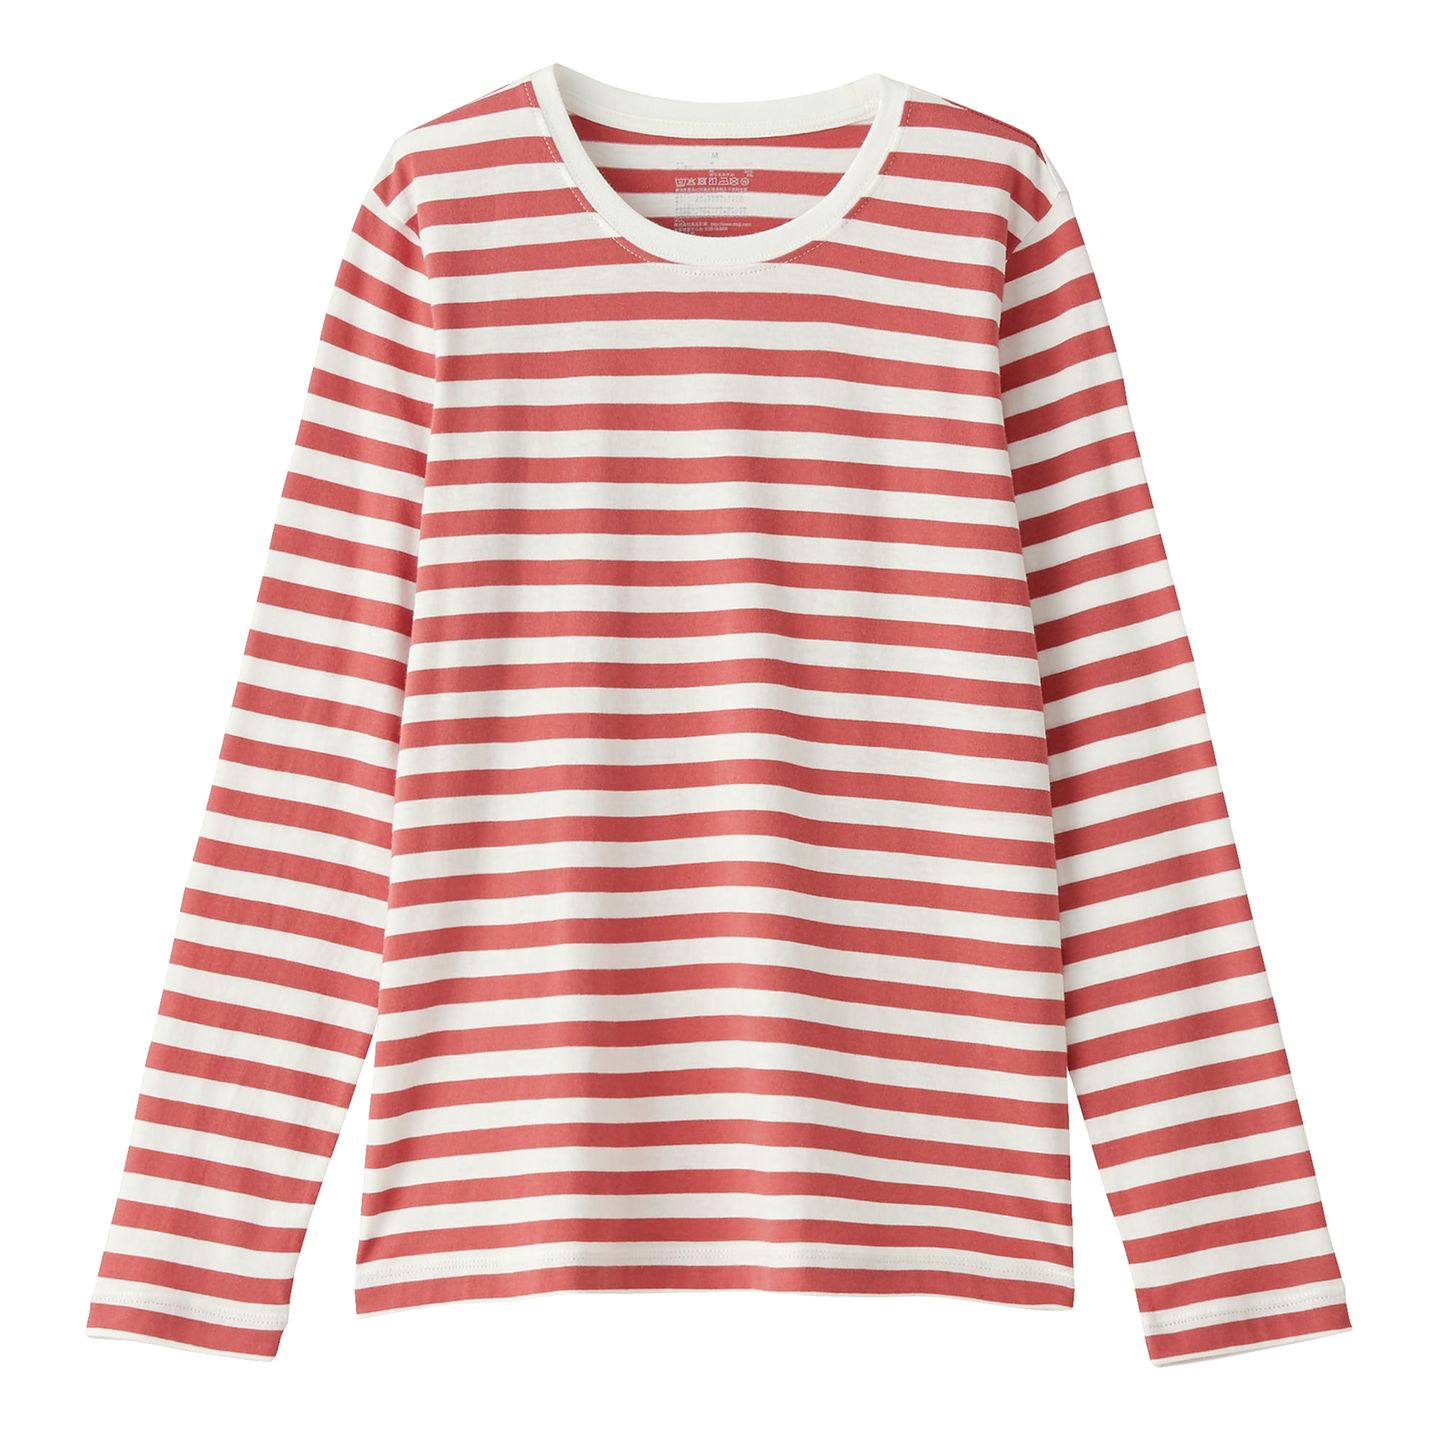 Den eigenen Stil finden: rot-weiß gestreiftes Shirt